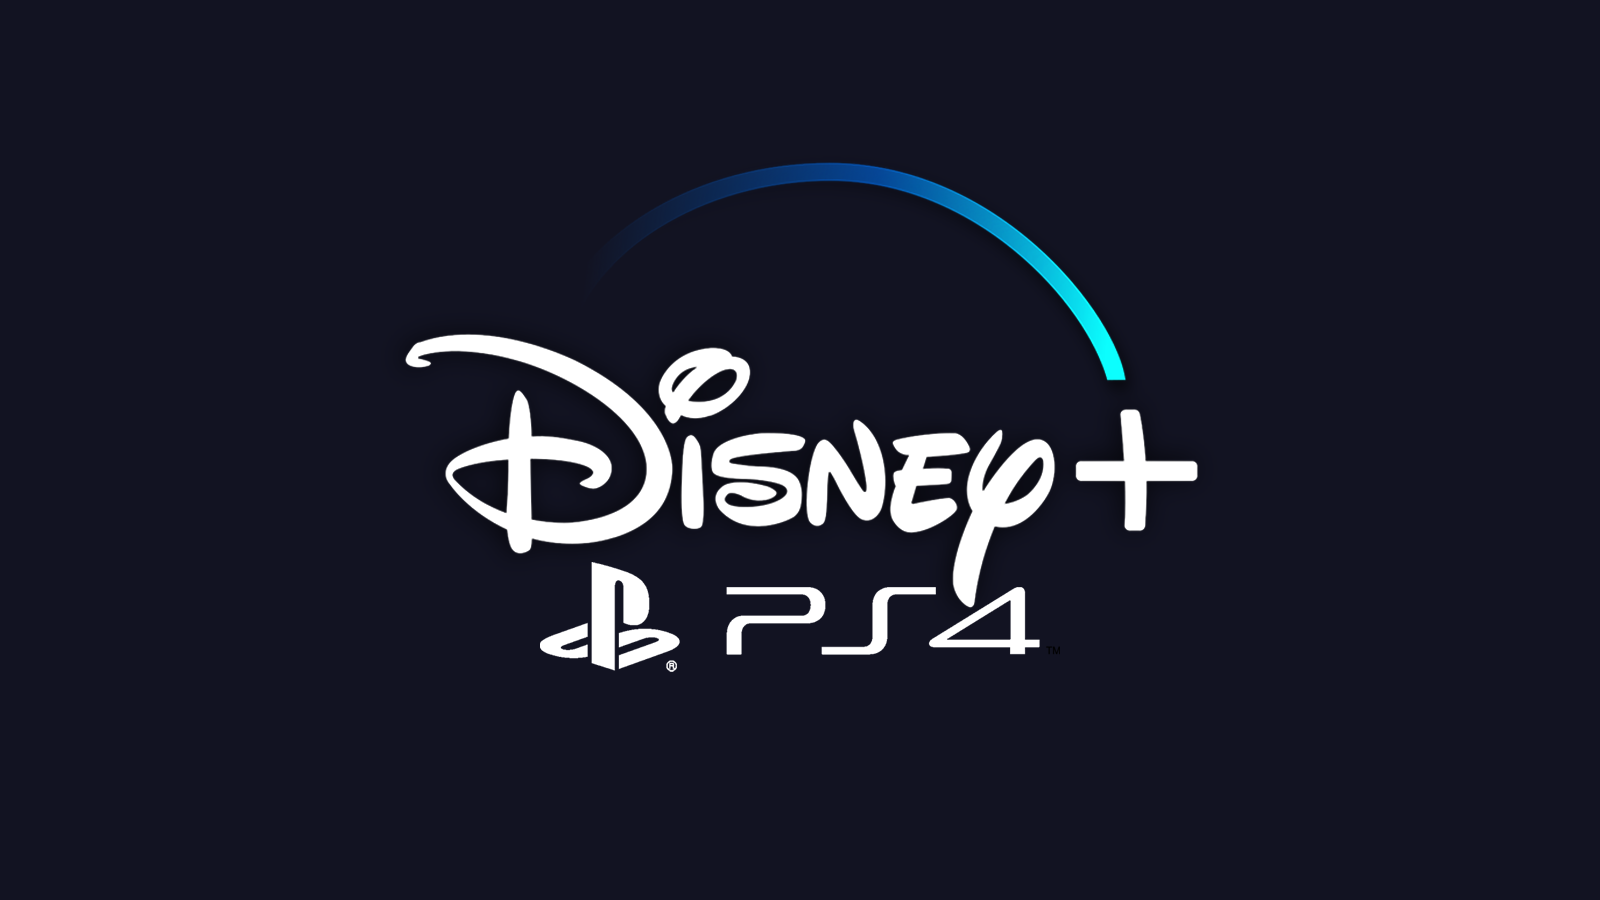 How to Watch Disney Plus on PS4 TechNadu